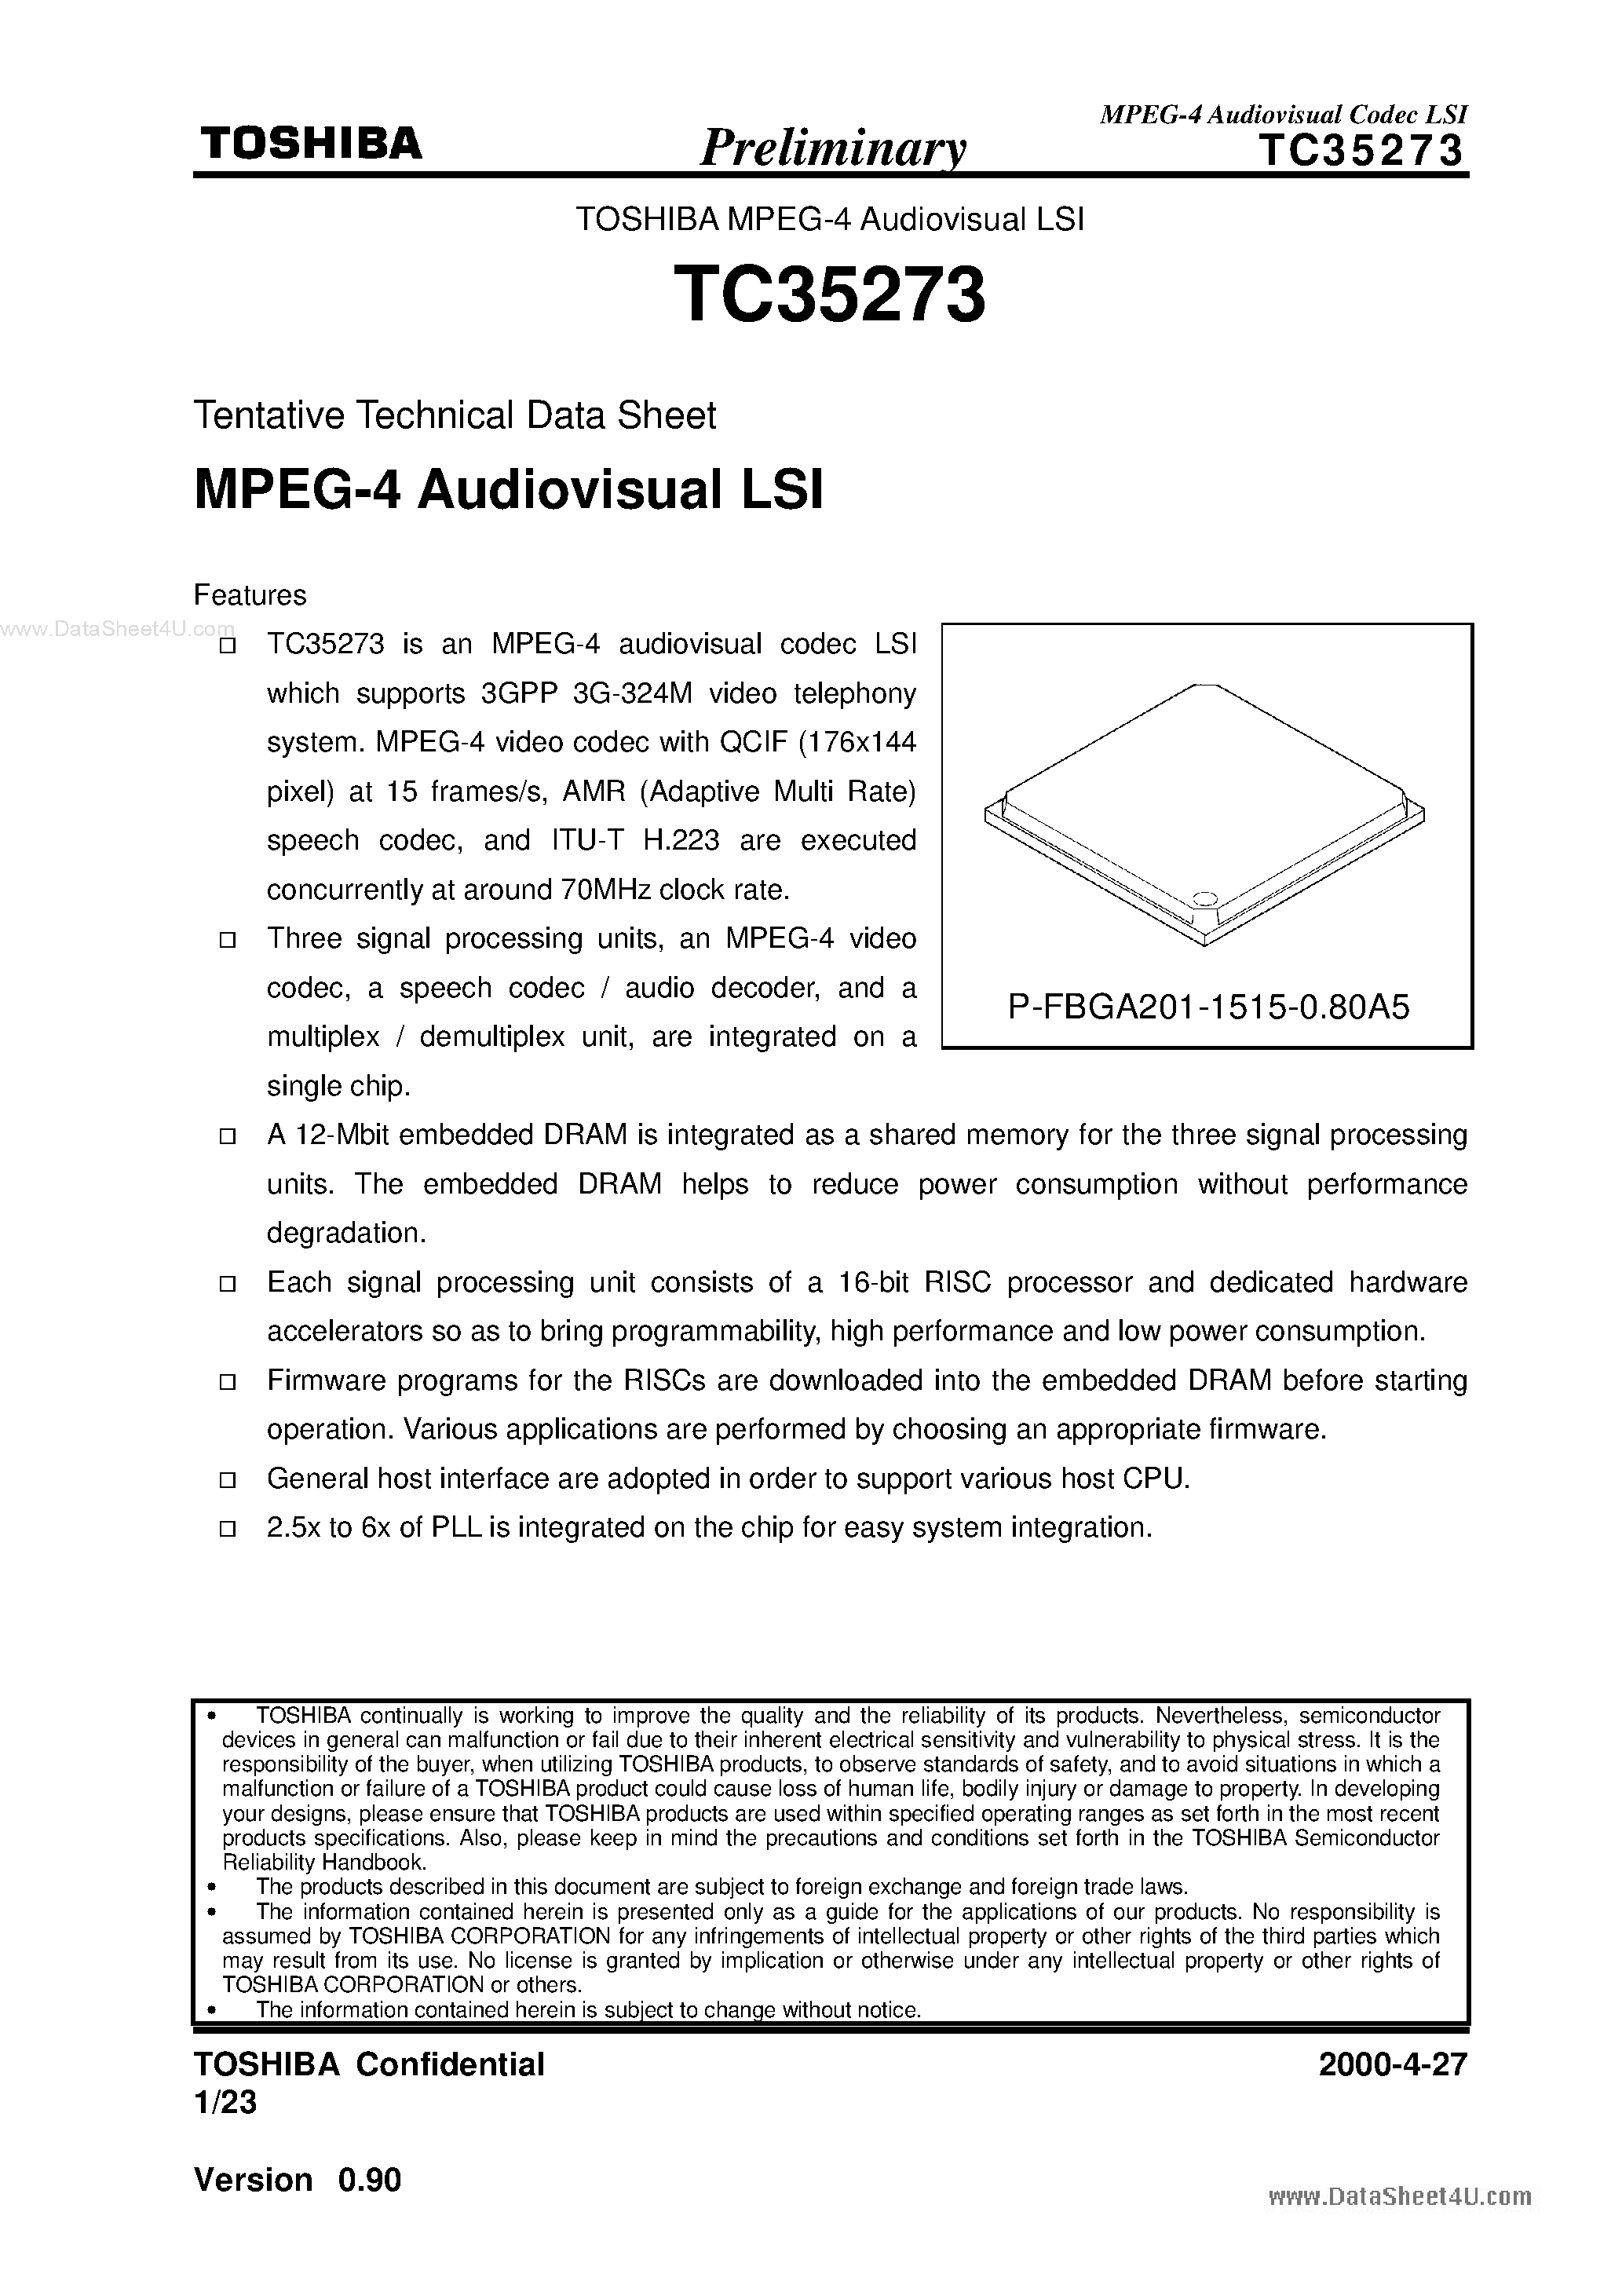 Datasheet TC35273 - MPEG-4 Audiovisual LSI page 1